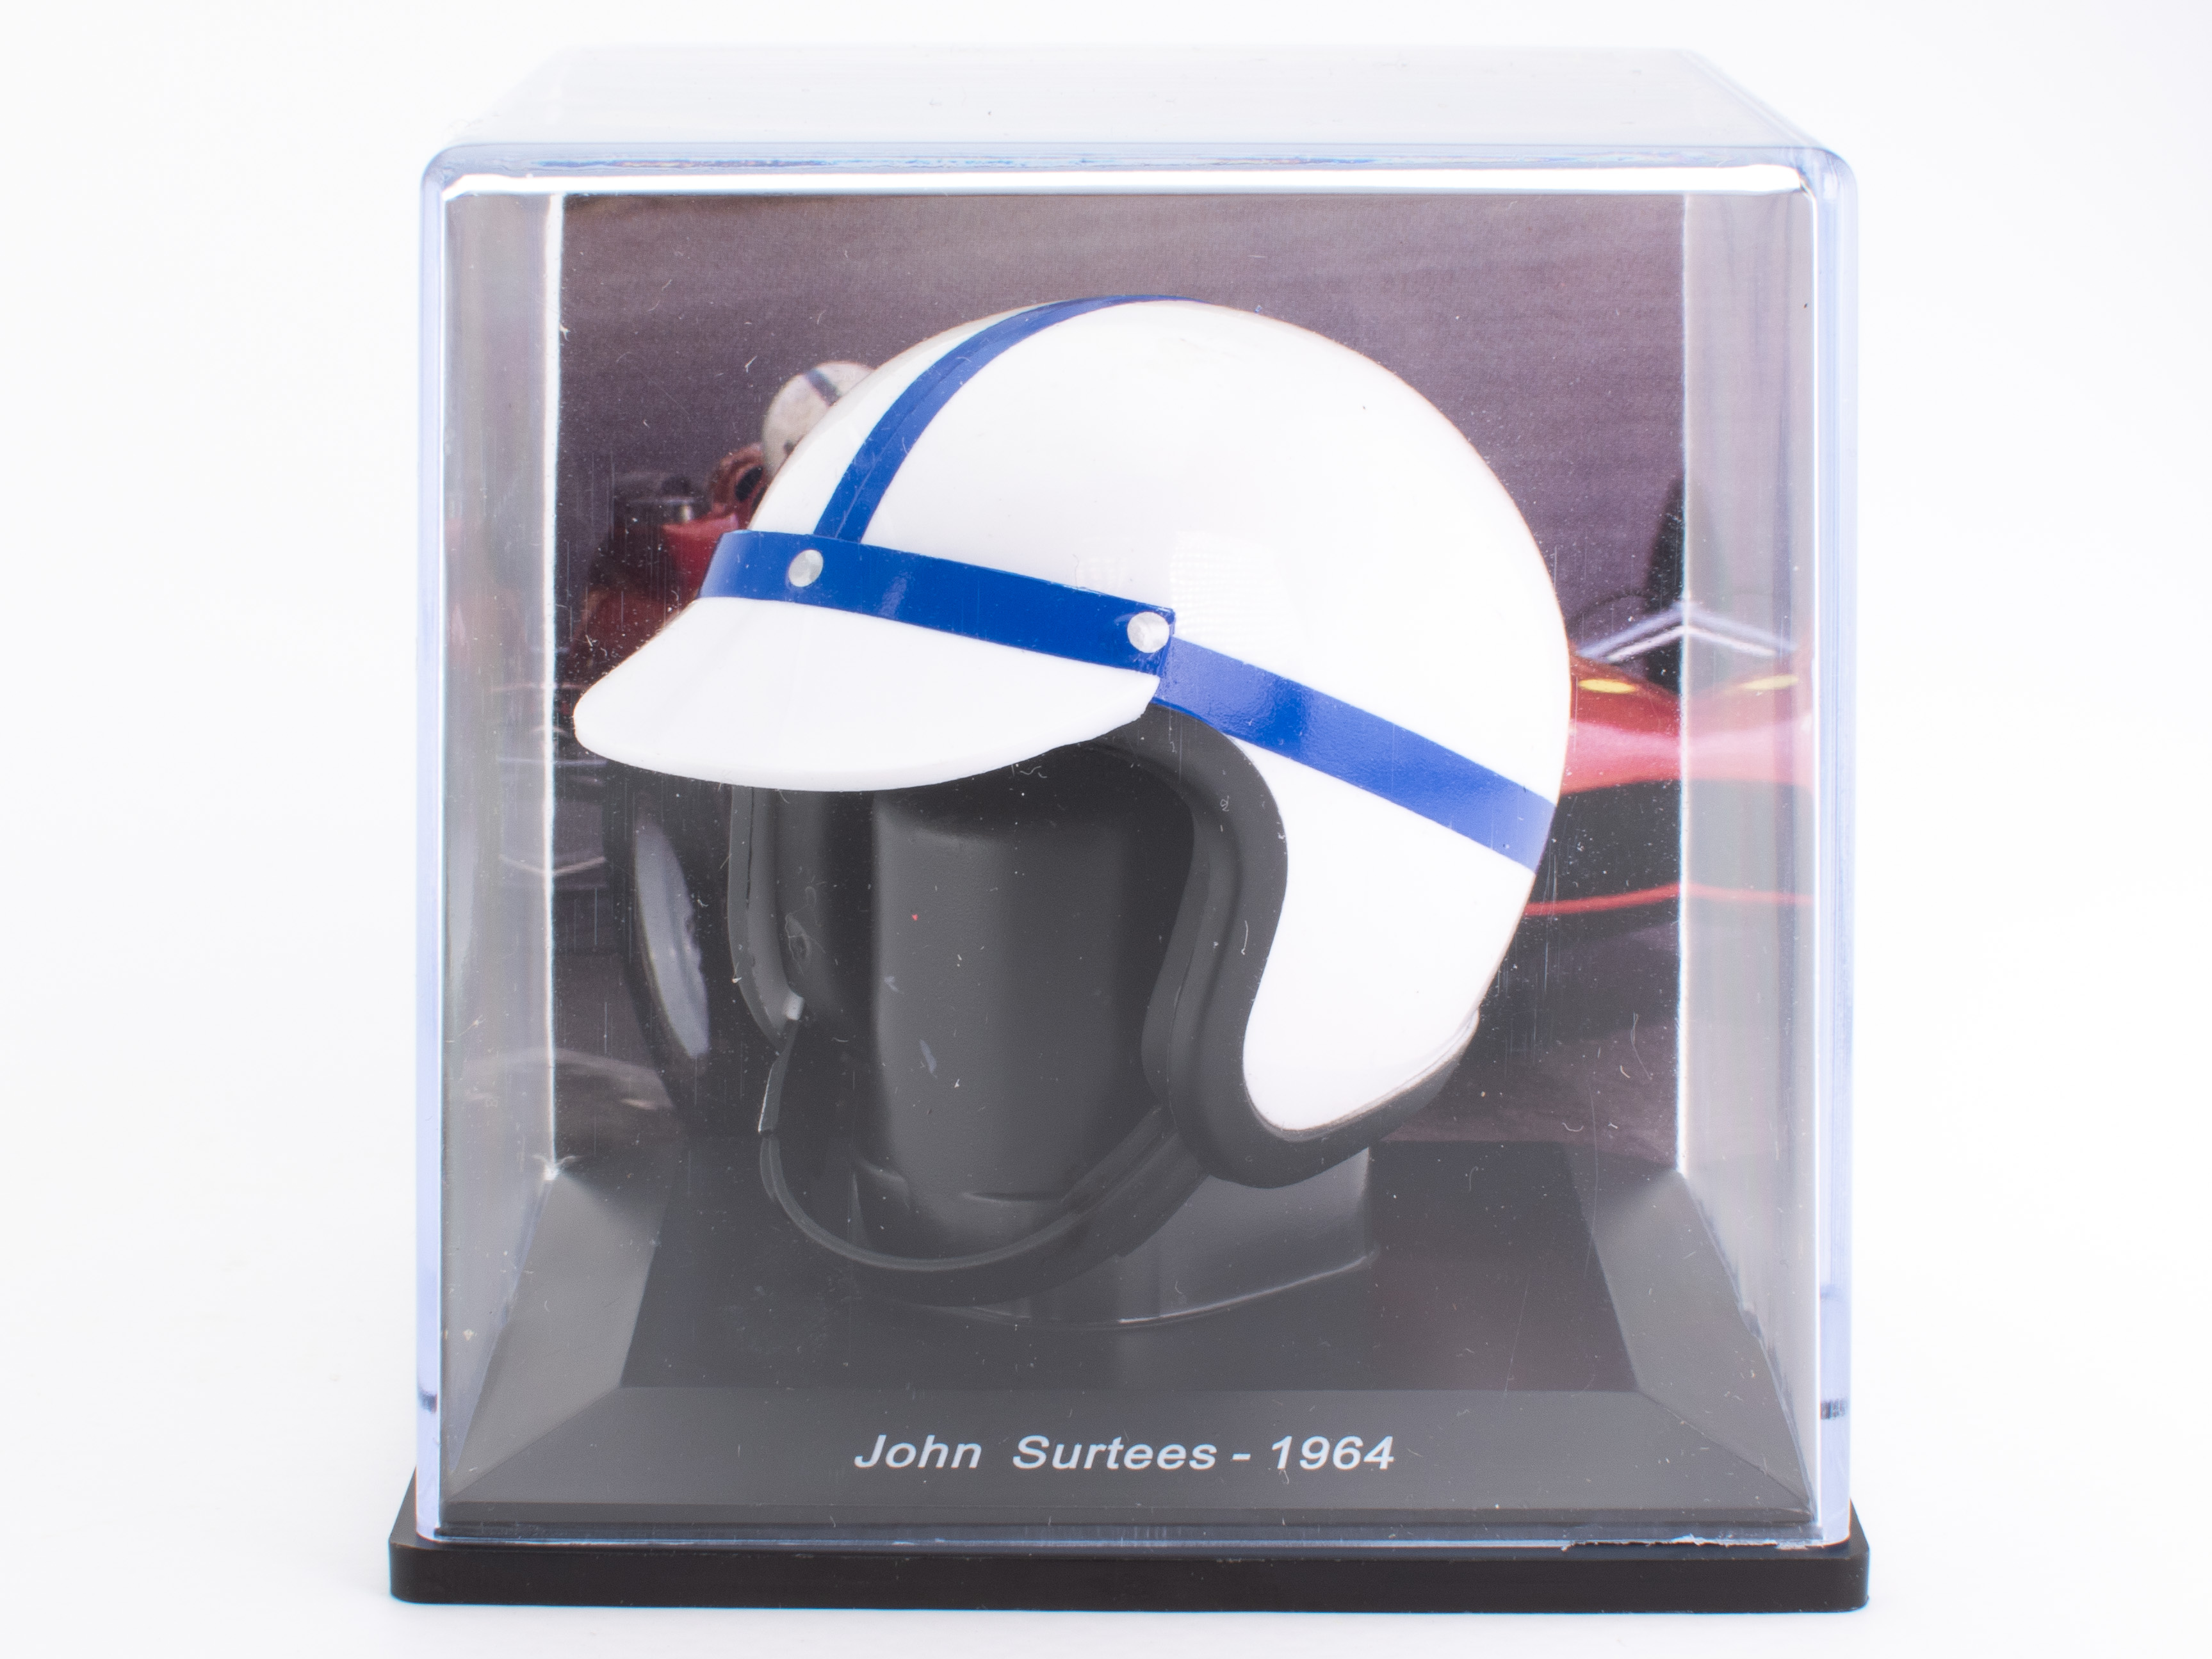 John Surtees - 1964